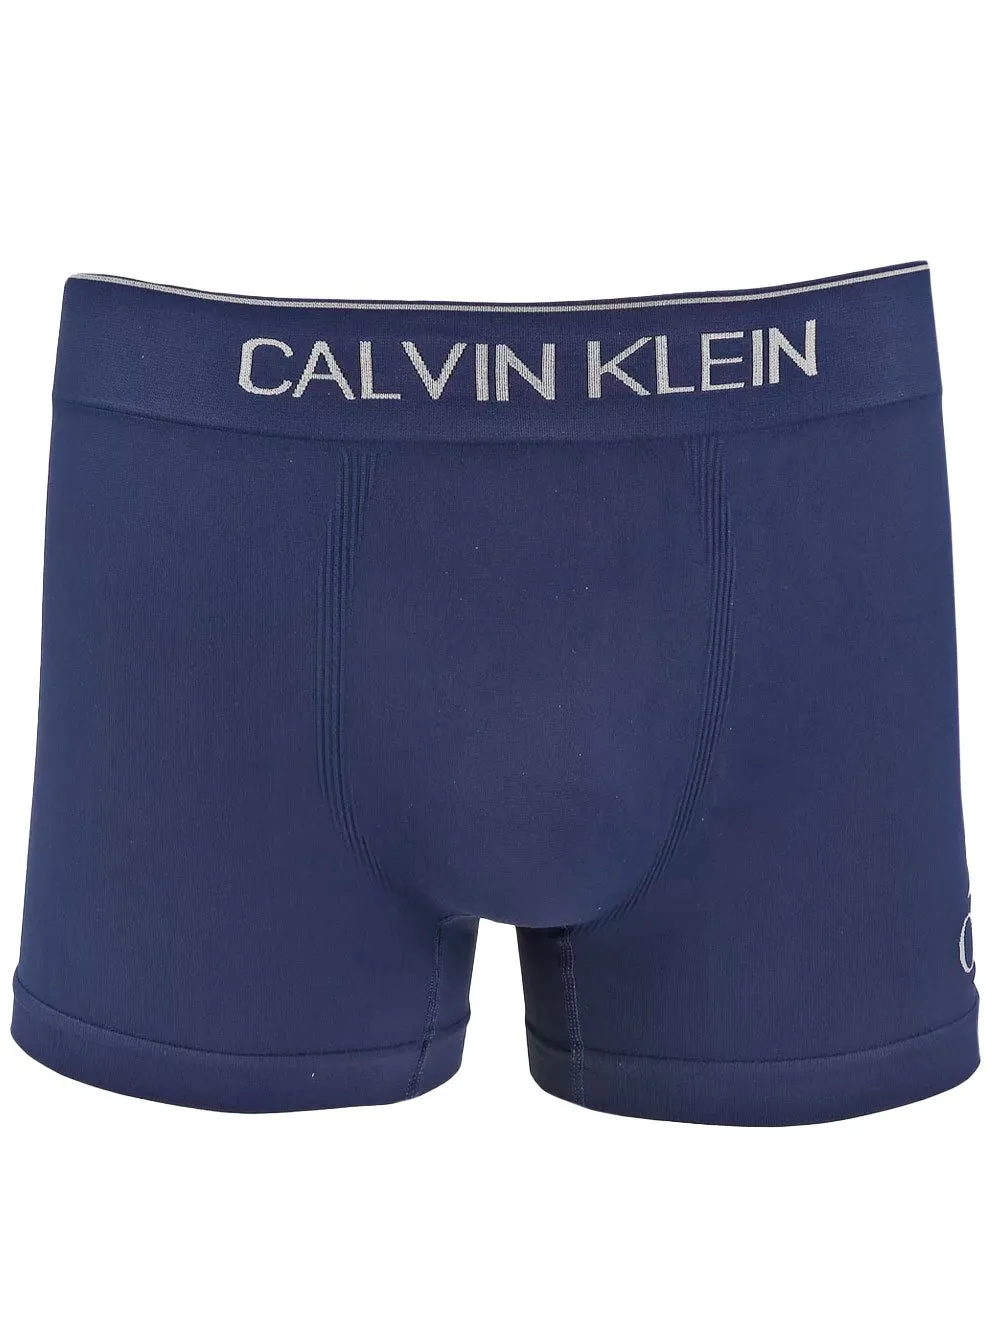 Cueca Calvin Klein Trunk Seamless Logo Lat Azul Escuro